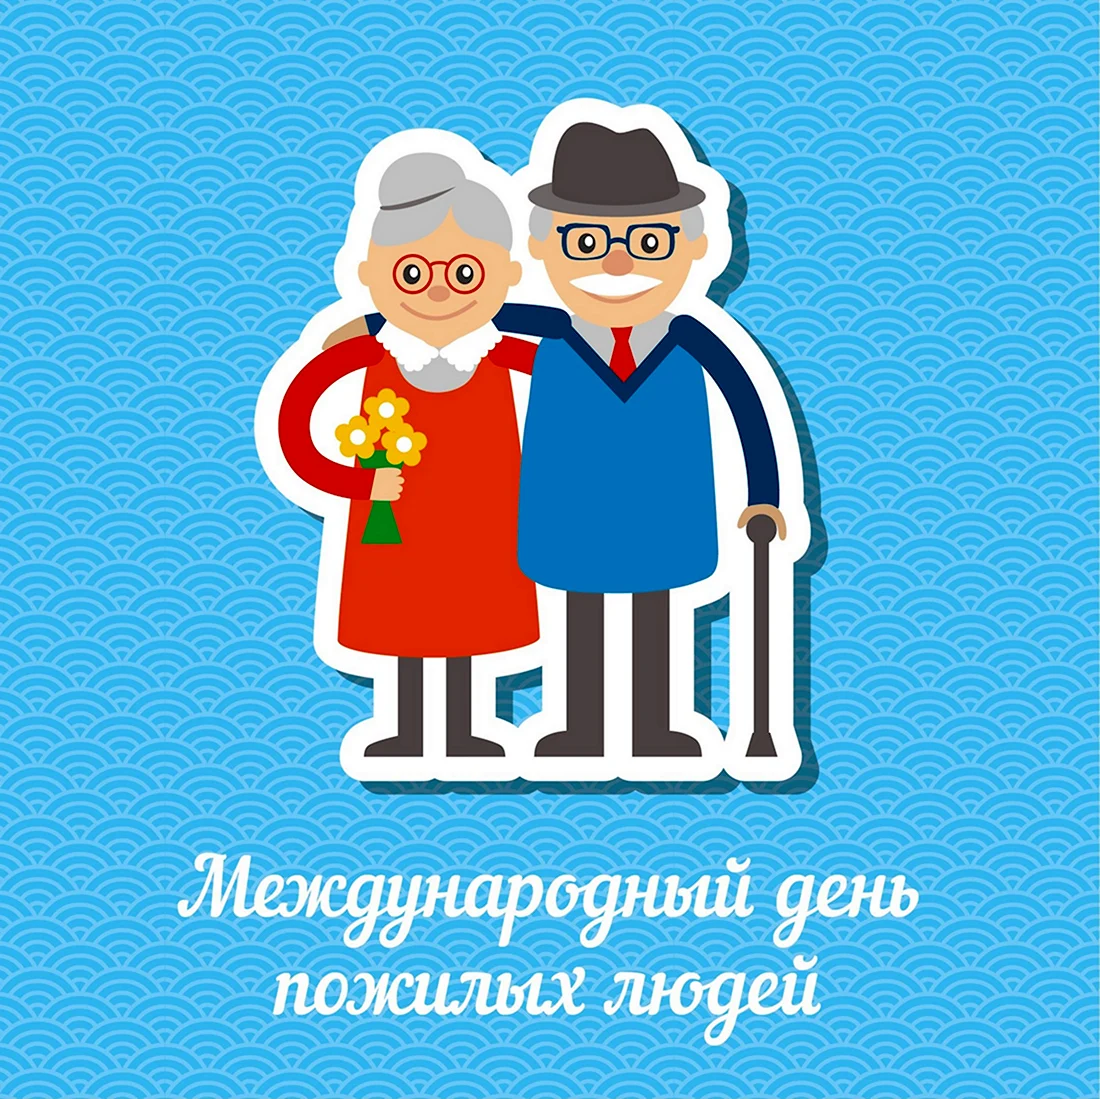 Международный день пожилых людей. Открытка на праздник